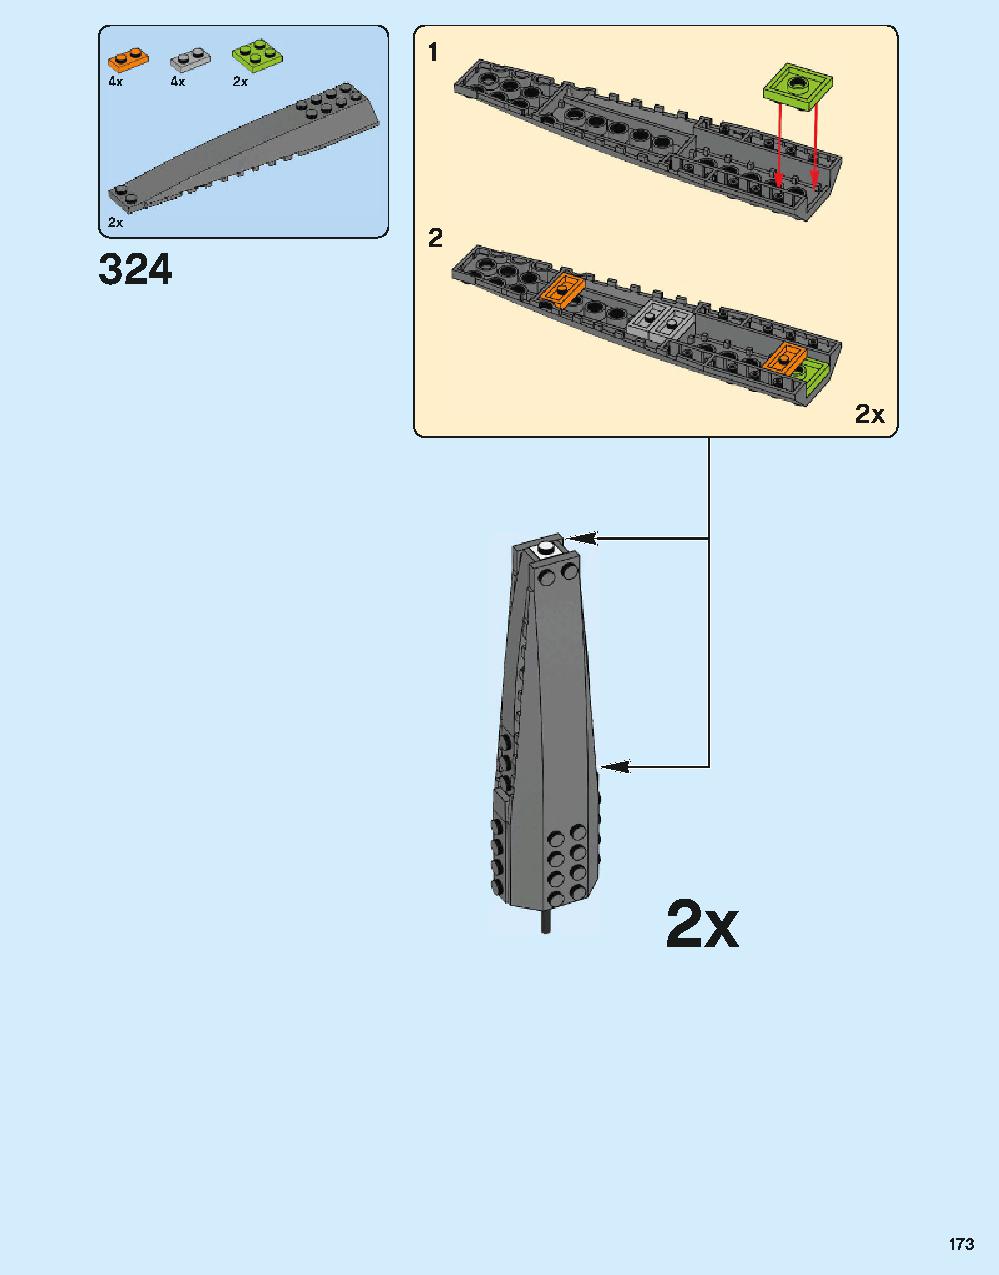 ホグワーツ城 71043 レゴの商品情報 レゴの説明書・組立方法 173 page